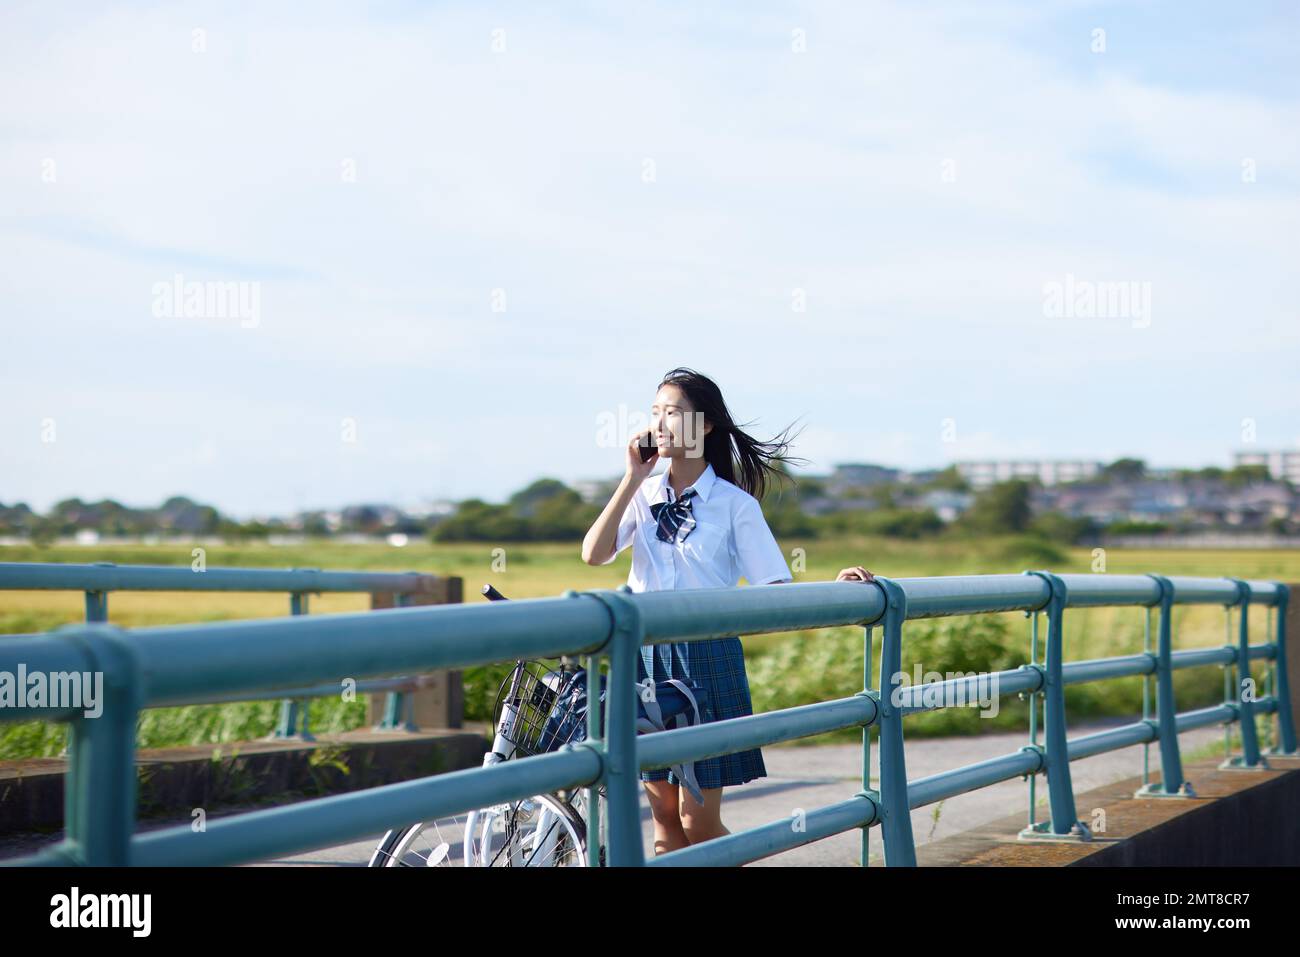 Japanische Highschool-Schüler Porträt im Freien Stockfoto